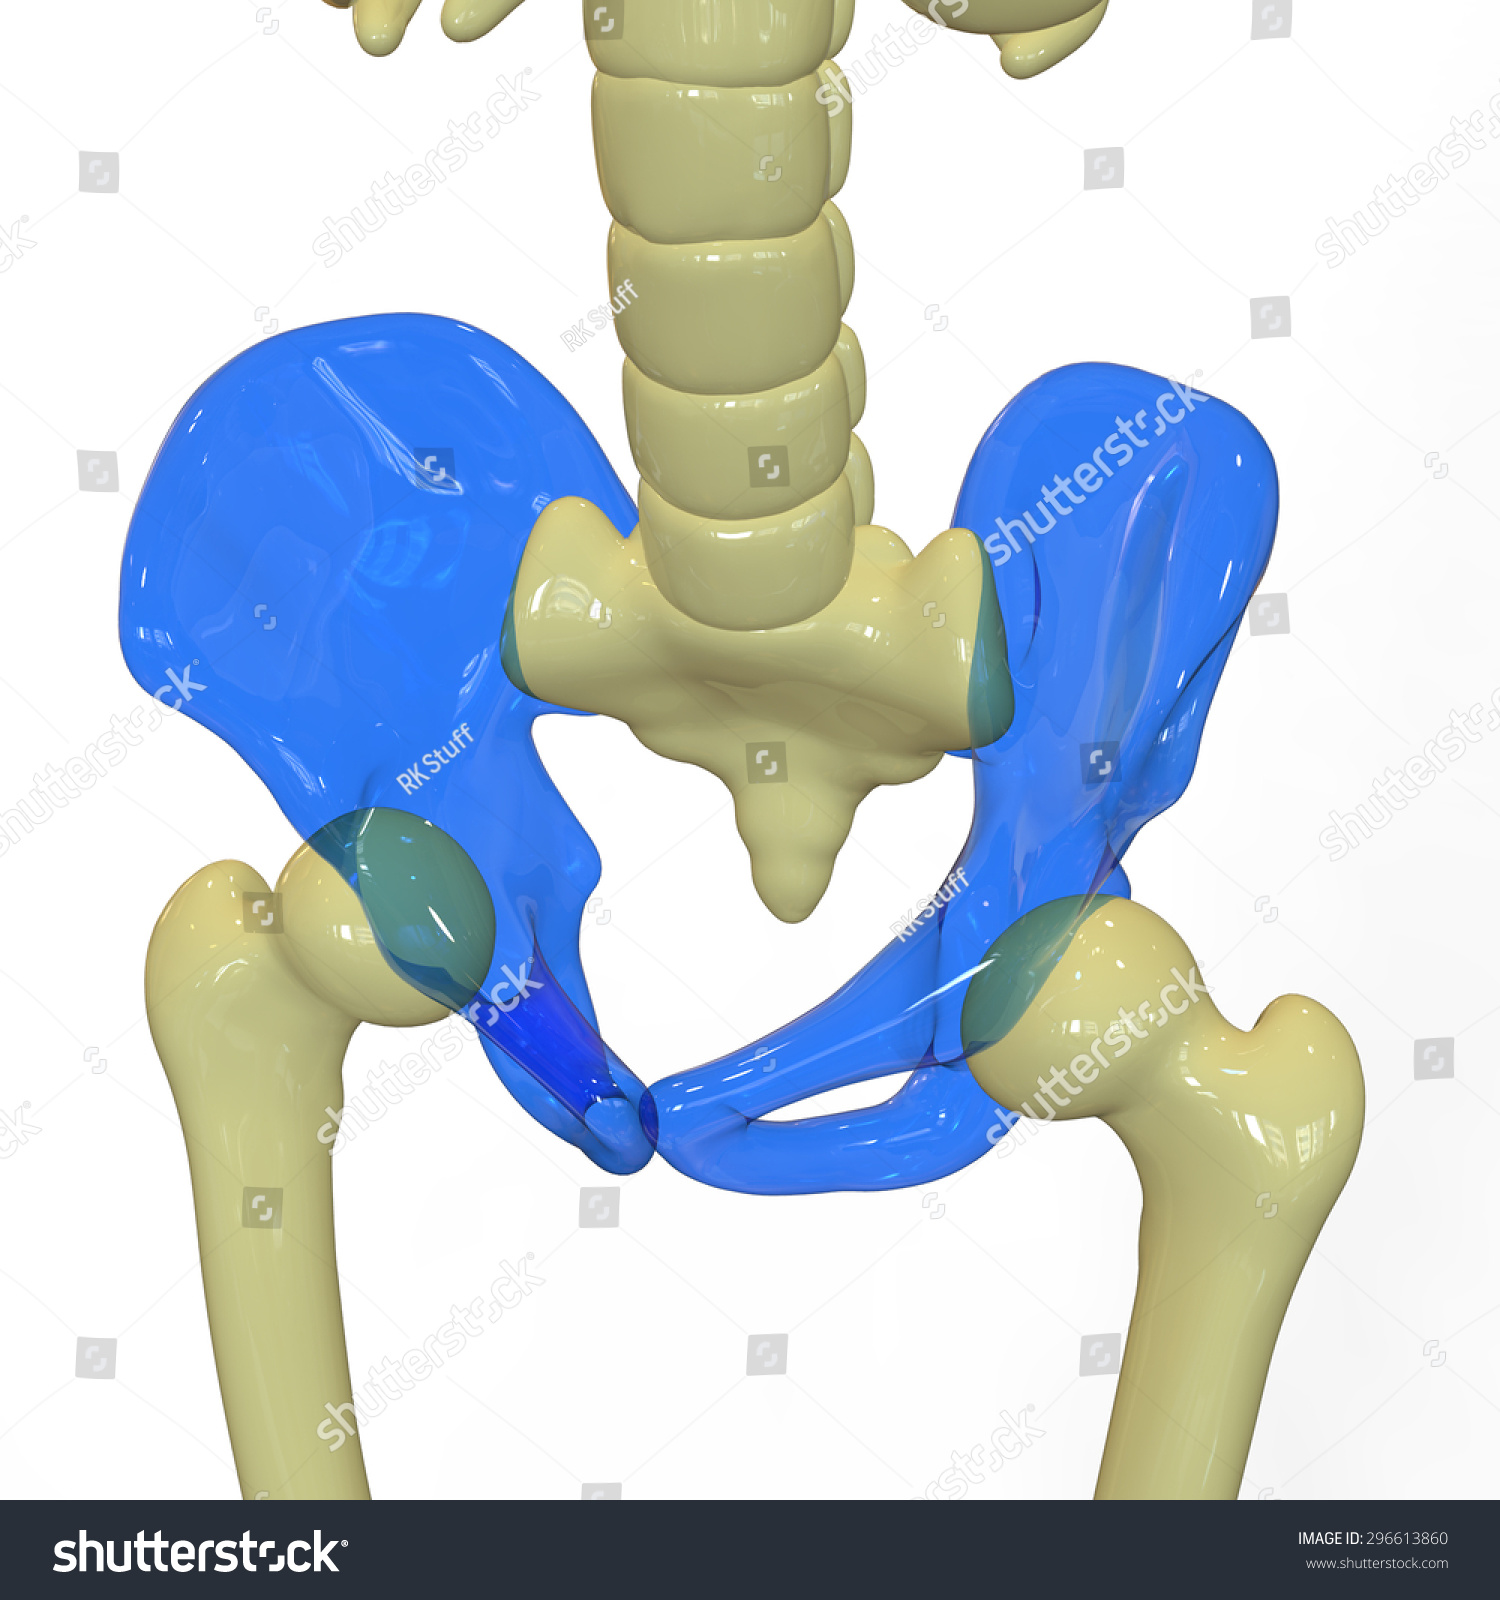 Human Pelvis Anatomy Stock Illustration 296613860 - Shutterstock